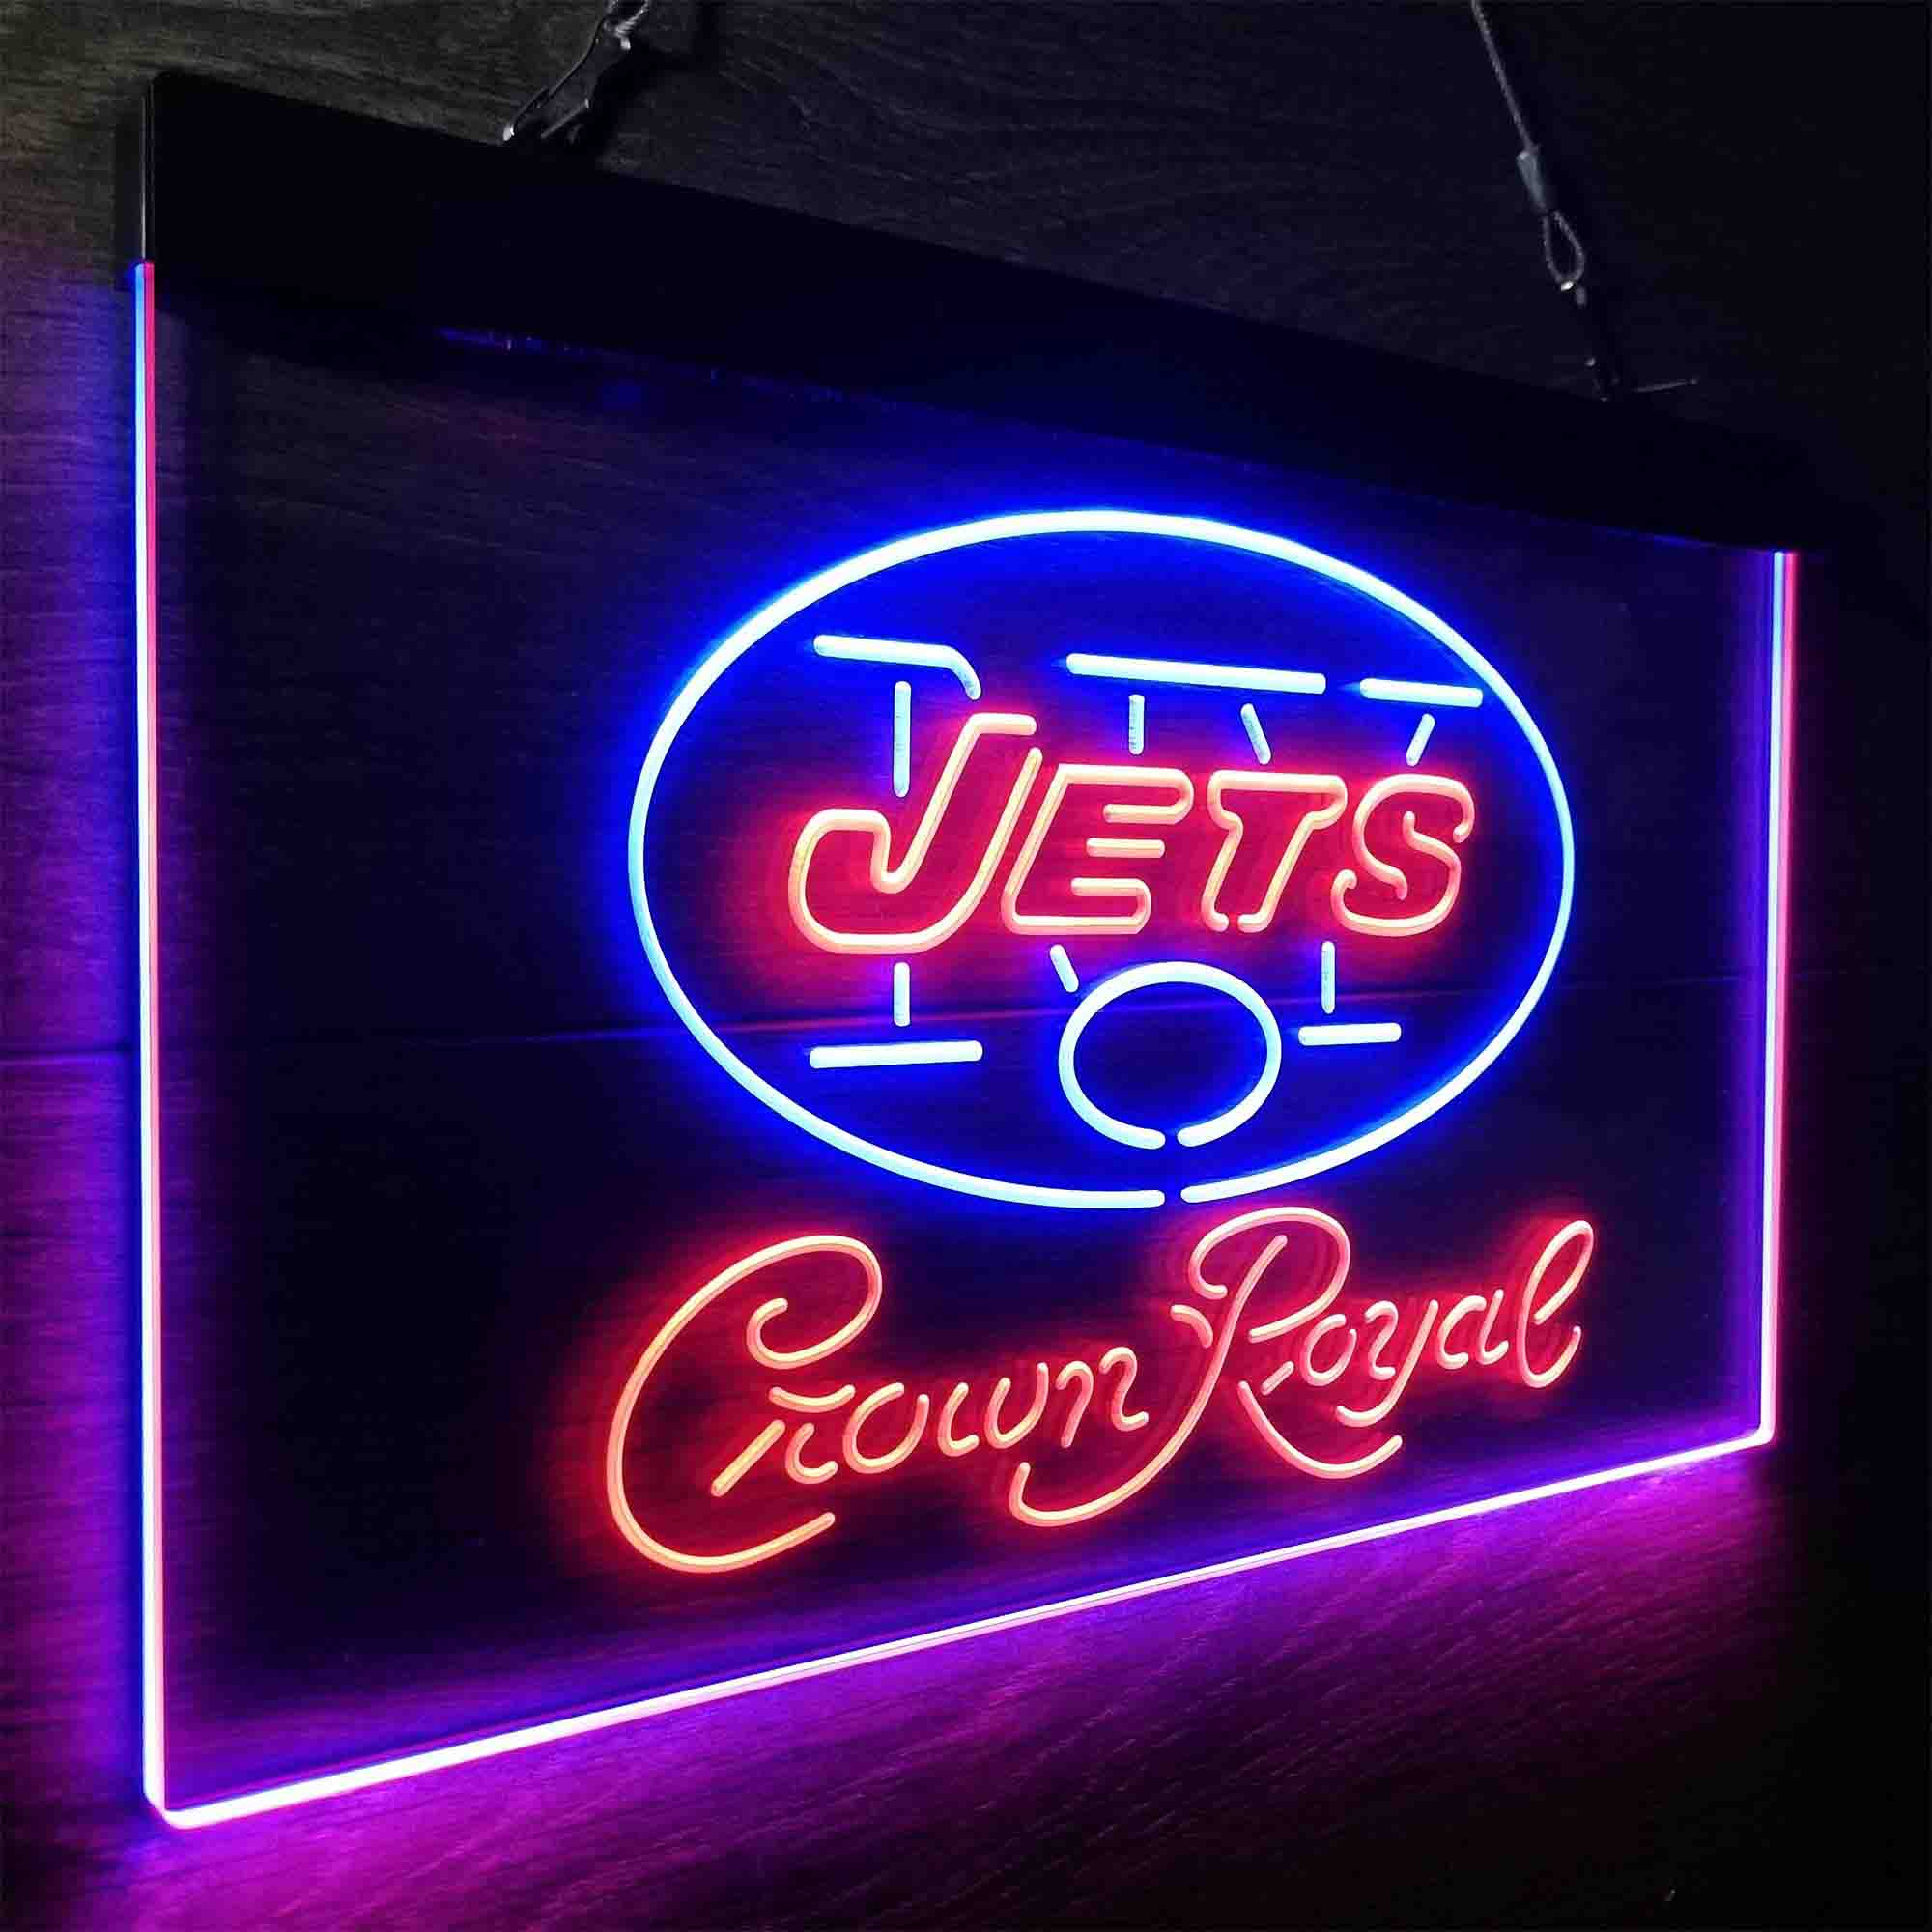 Crown Royal Bar New York Jets Est. 1960 LED Neon Sign